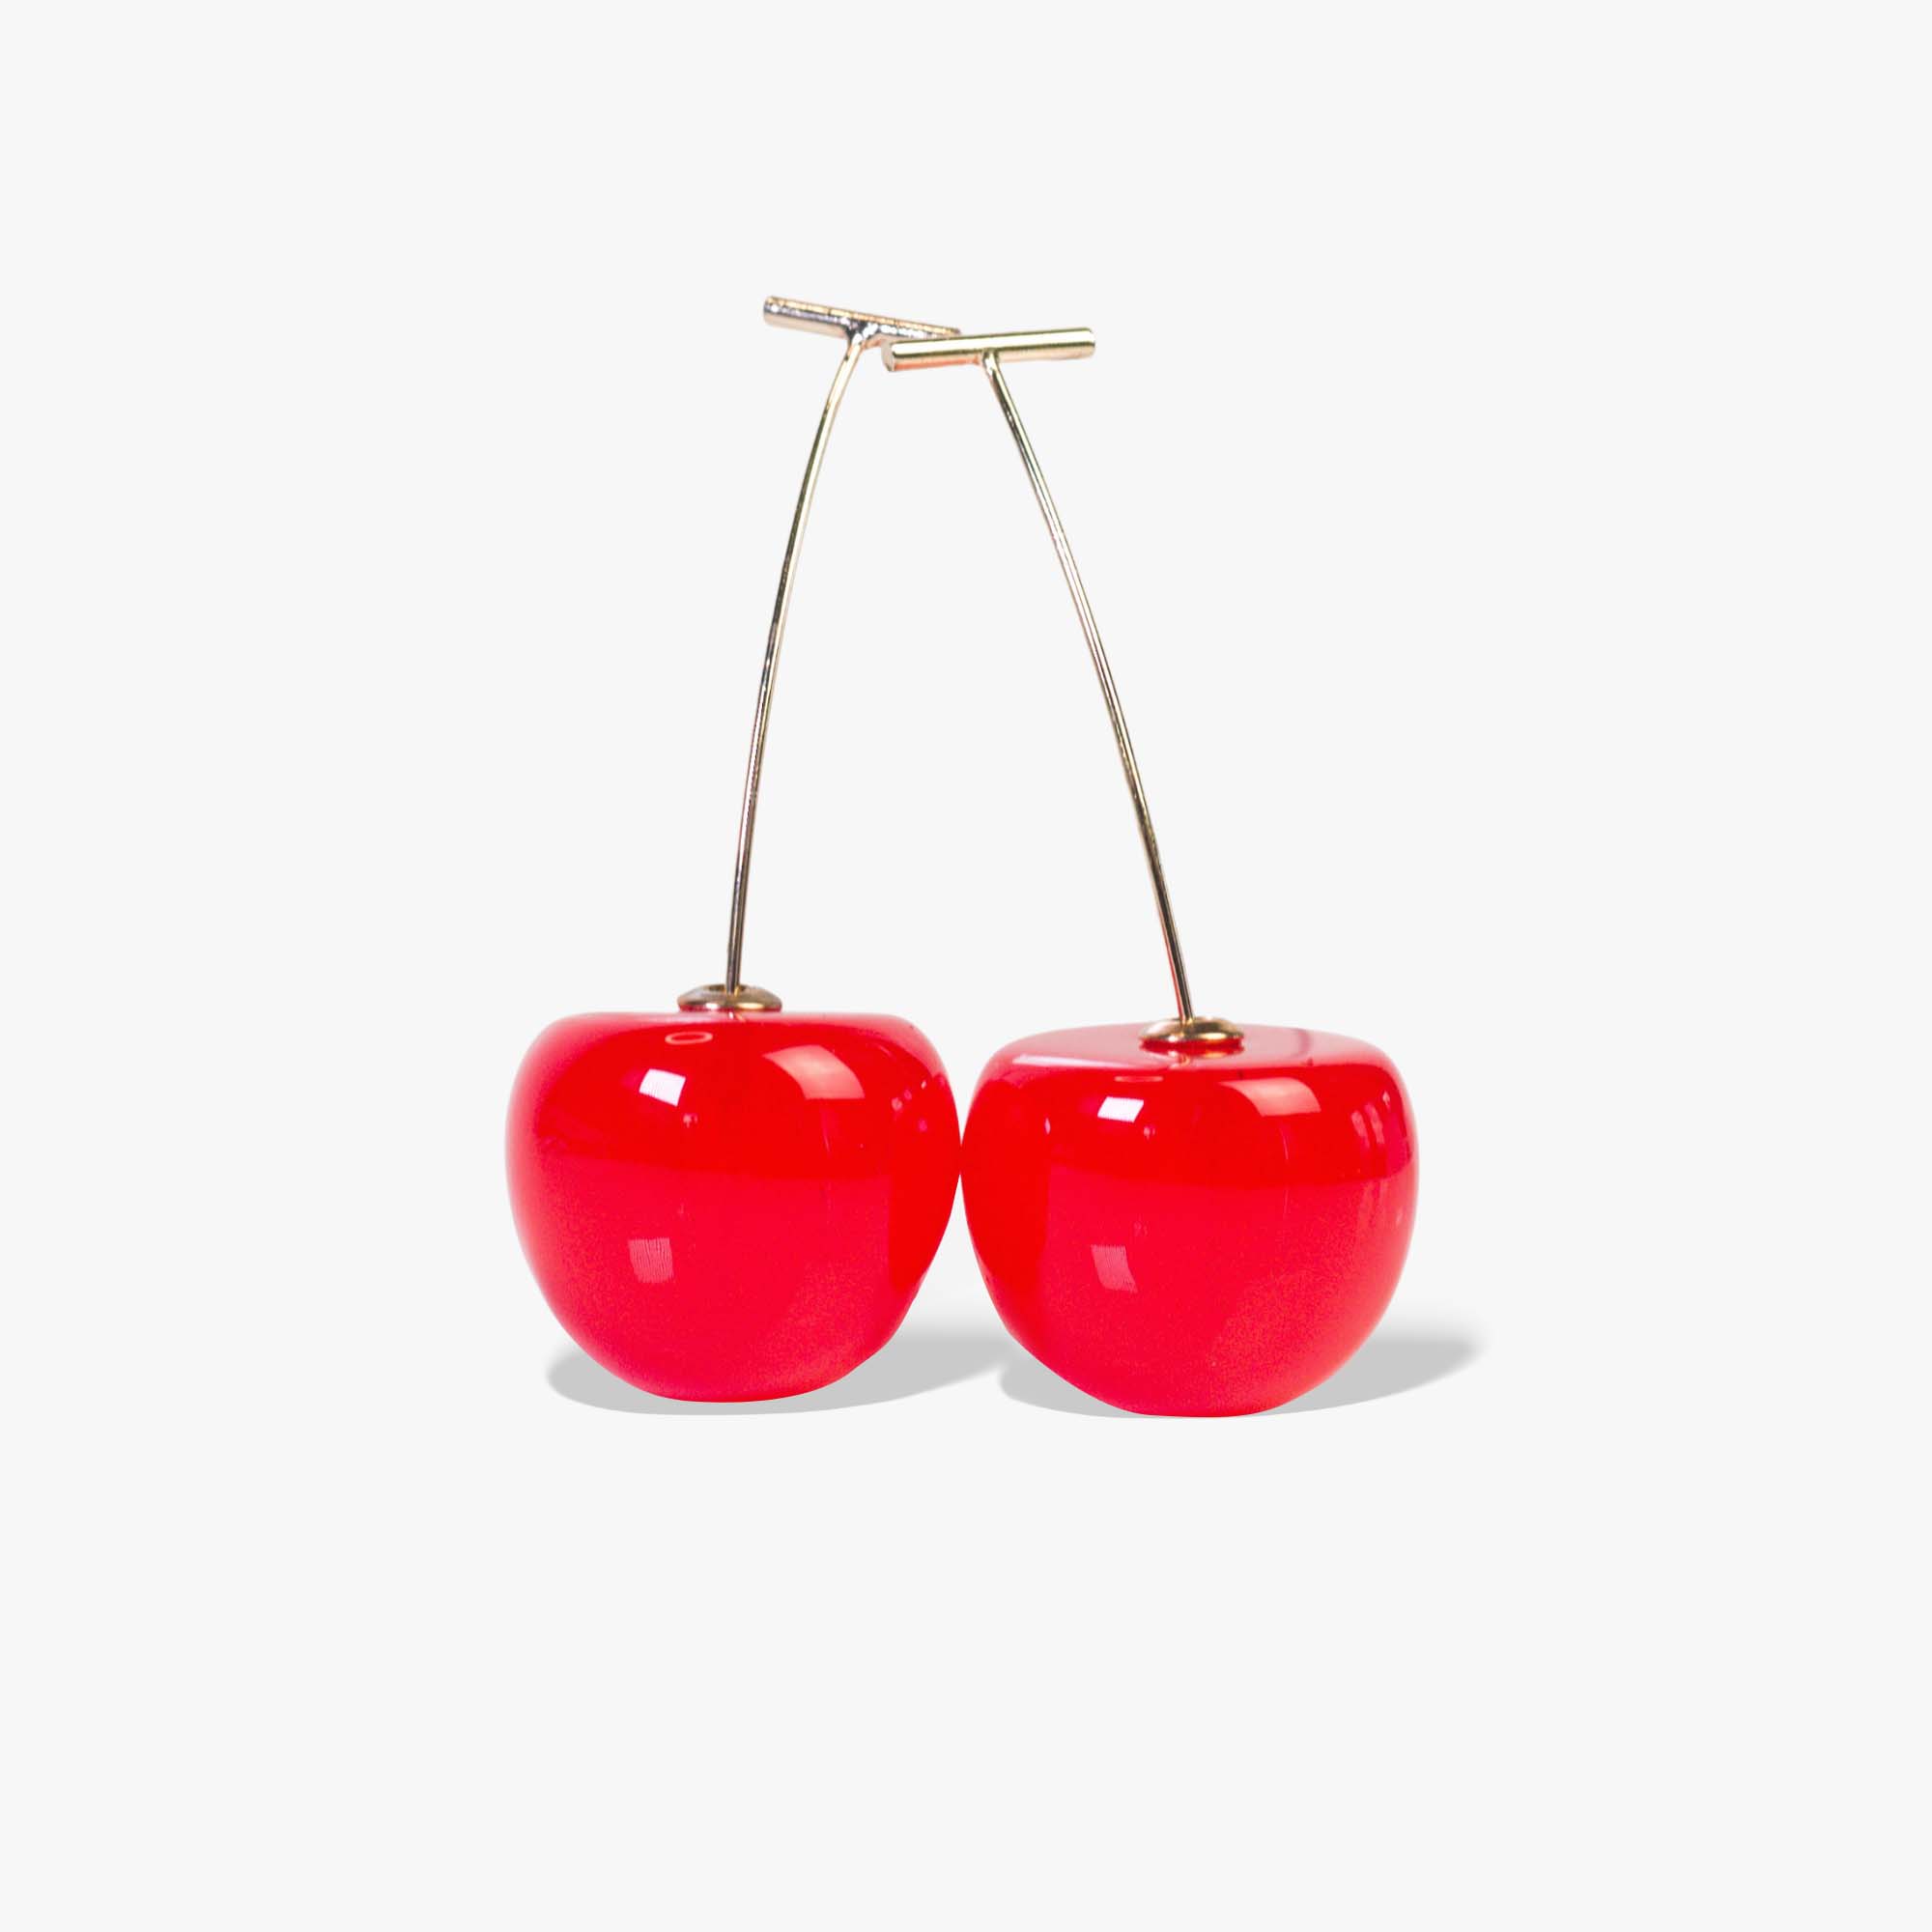 Red Cherry Bomb Earrings for Women